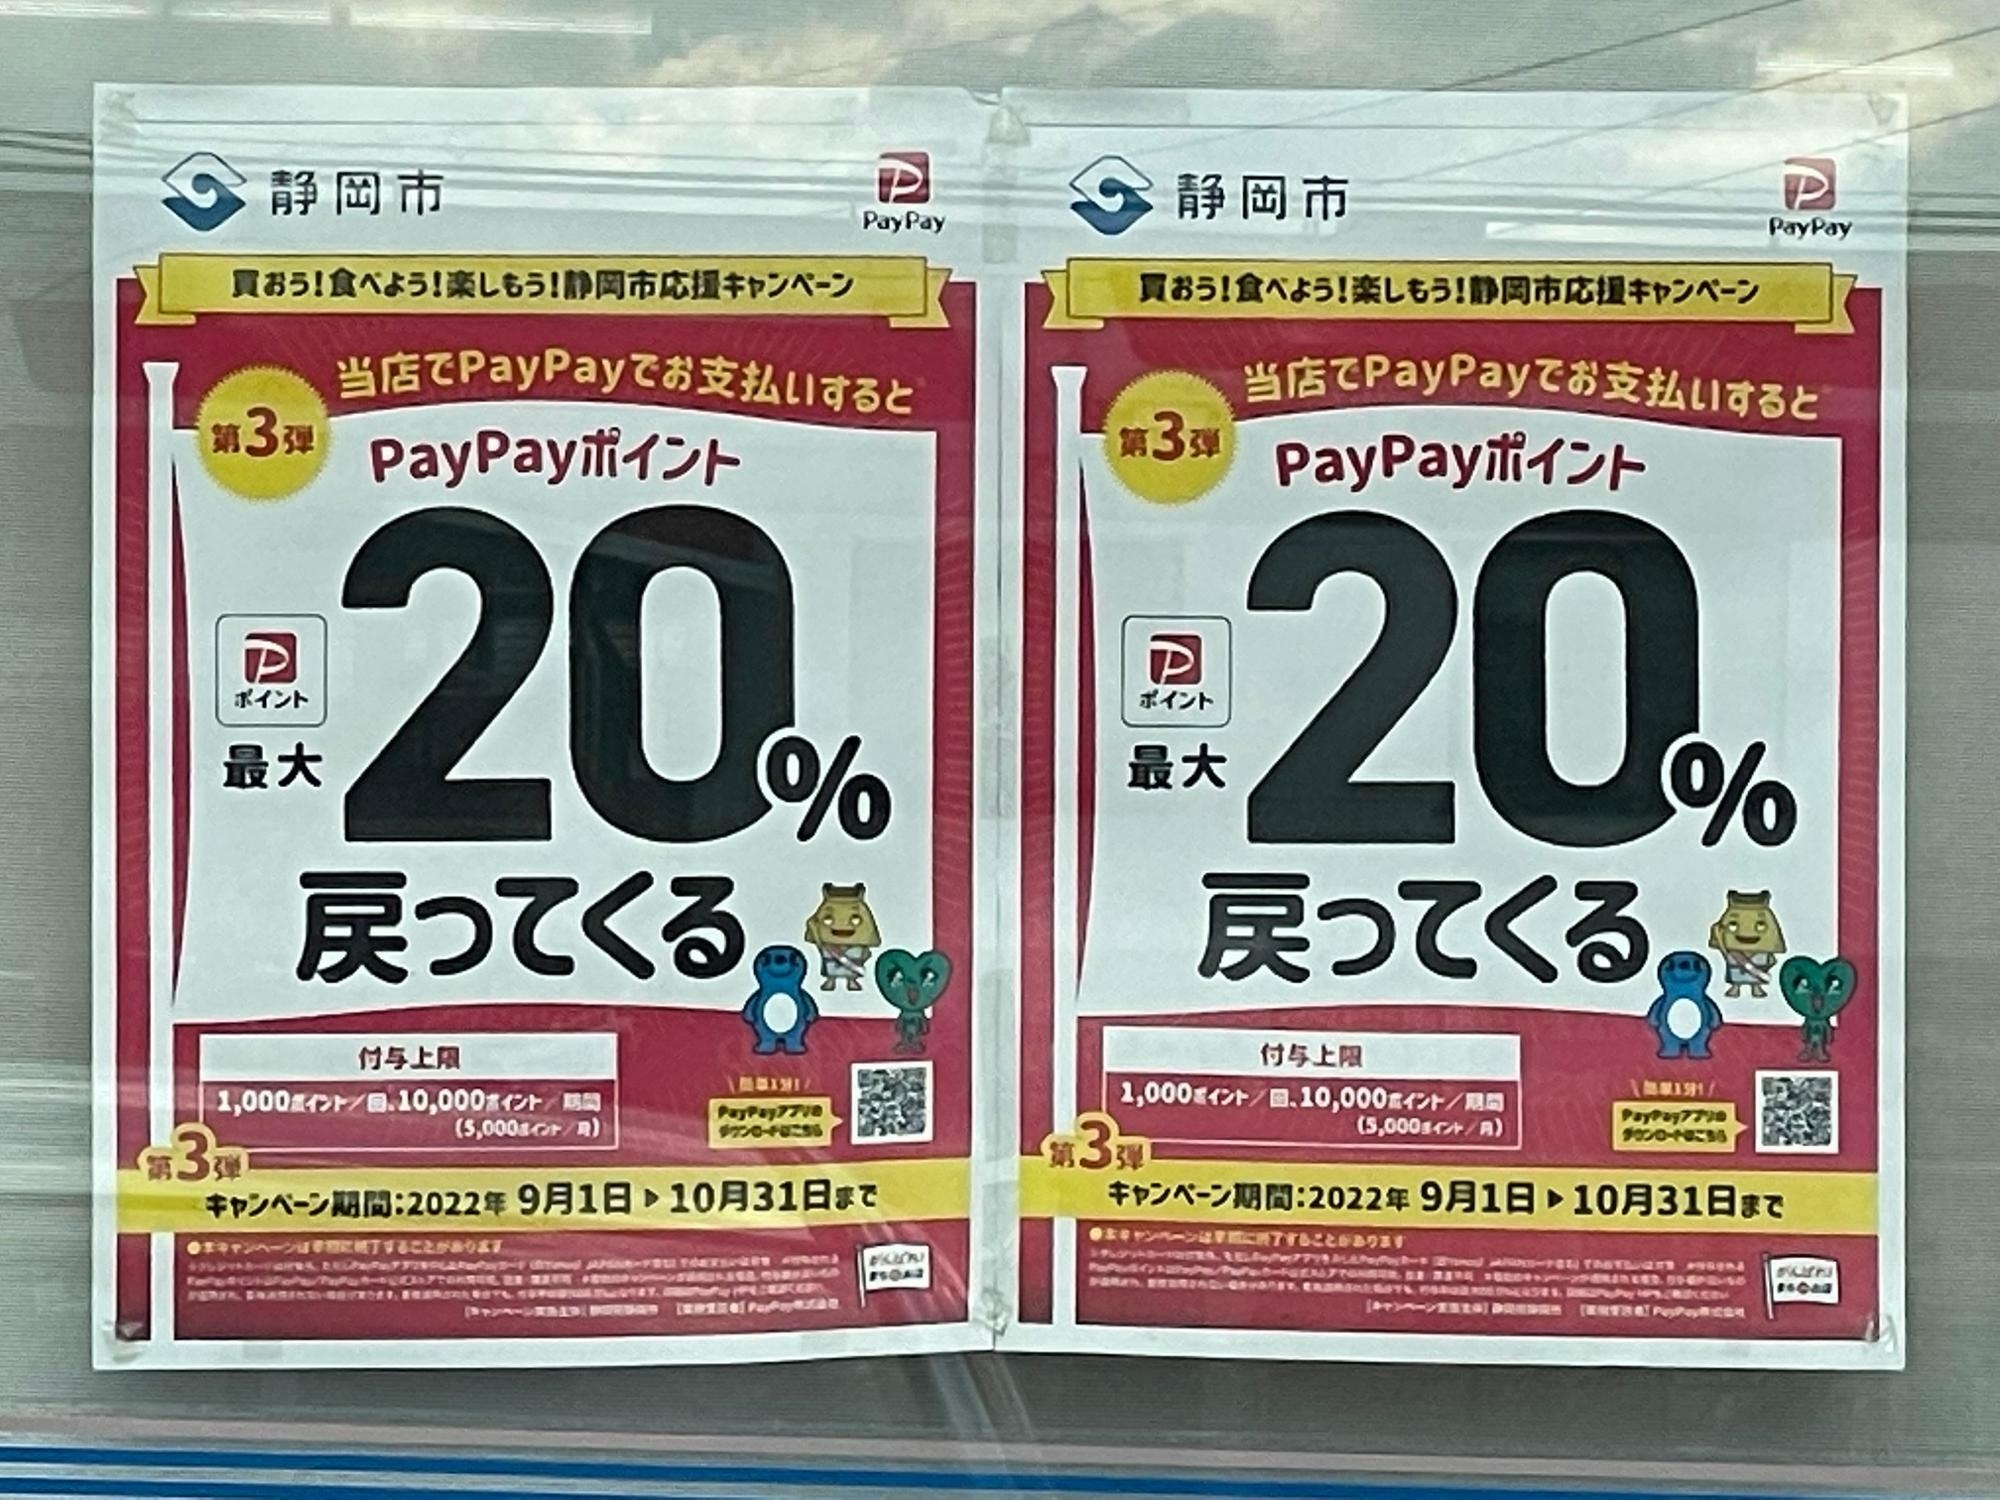 9月・10月に開催された静岡市のキャンペーン